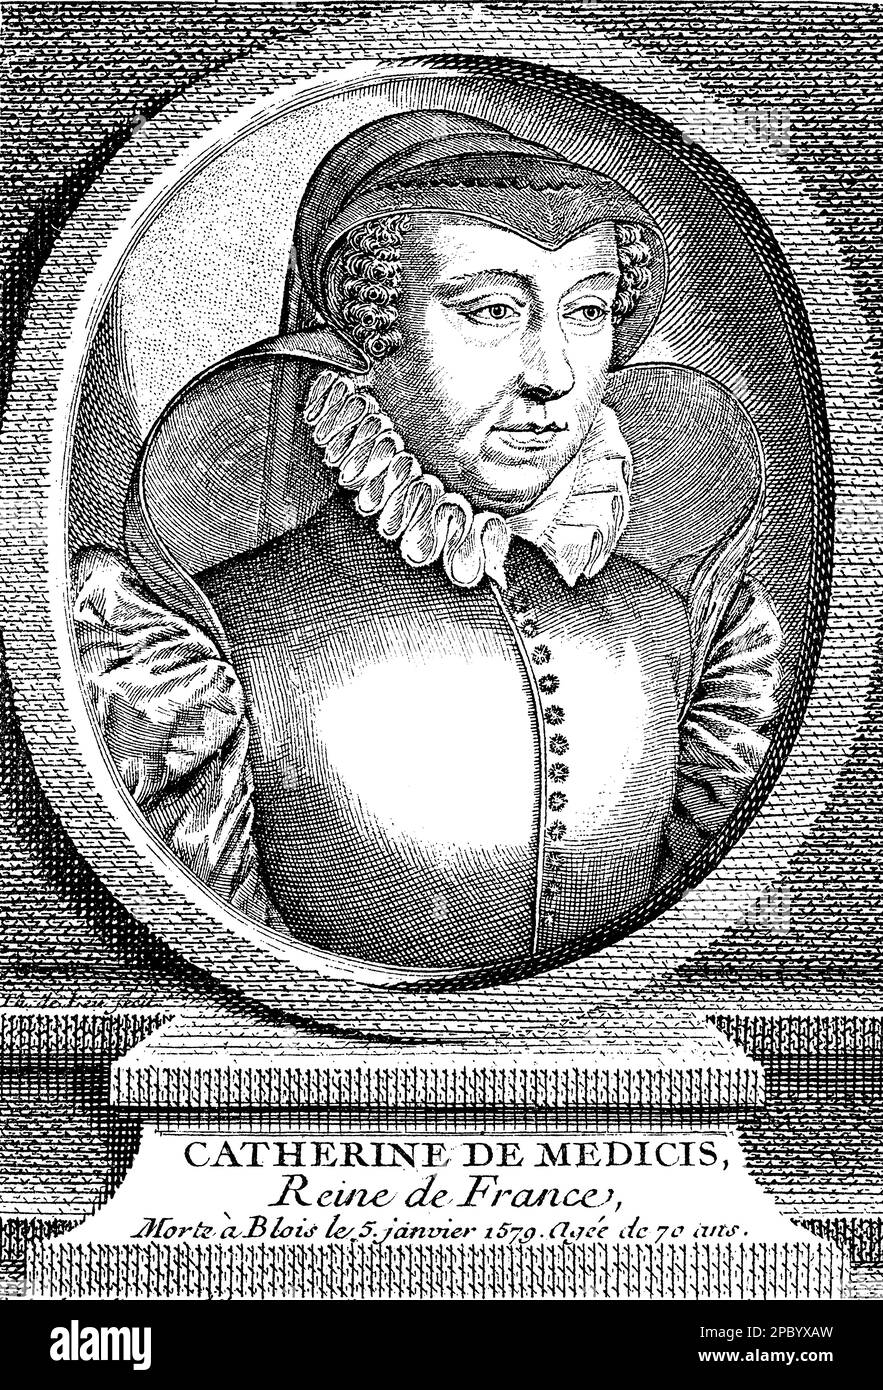 Catherine de' Medici war eine mächtige Gemahlin und Regentin Frankreichs im 16. Jahrhundert. Sie war bekannt für ihren politischen Einfluss, ihre Schirmherrschaft der Künste und ihre kontroverse Rolle in den französischen Religionskriegen. Sie war auch bekannt für ihr Interesse an Astrologie und ihr berüchtigtes „Kabinett der Schrecken“. Stockfoto